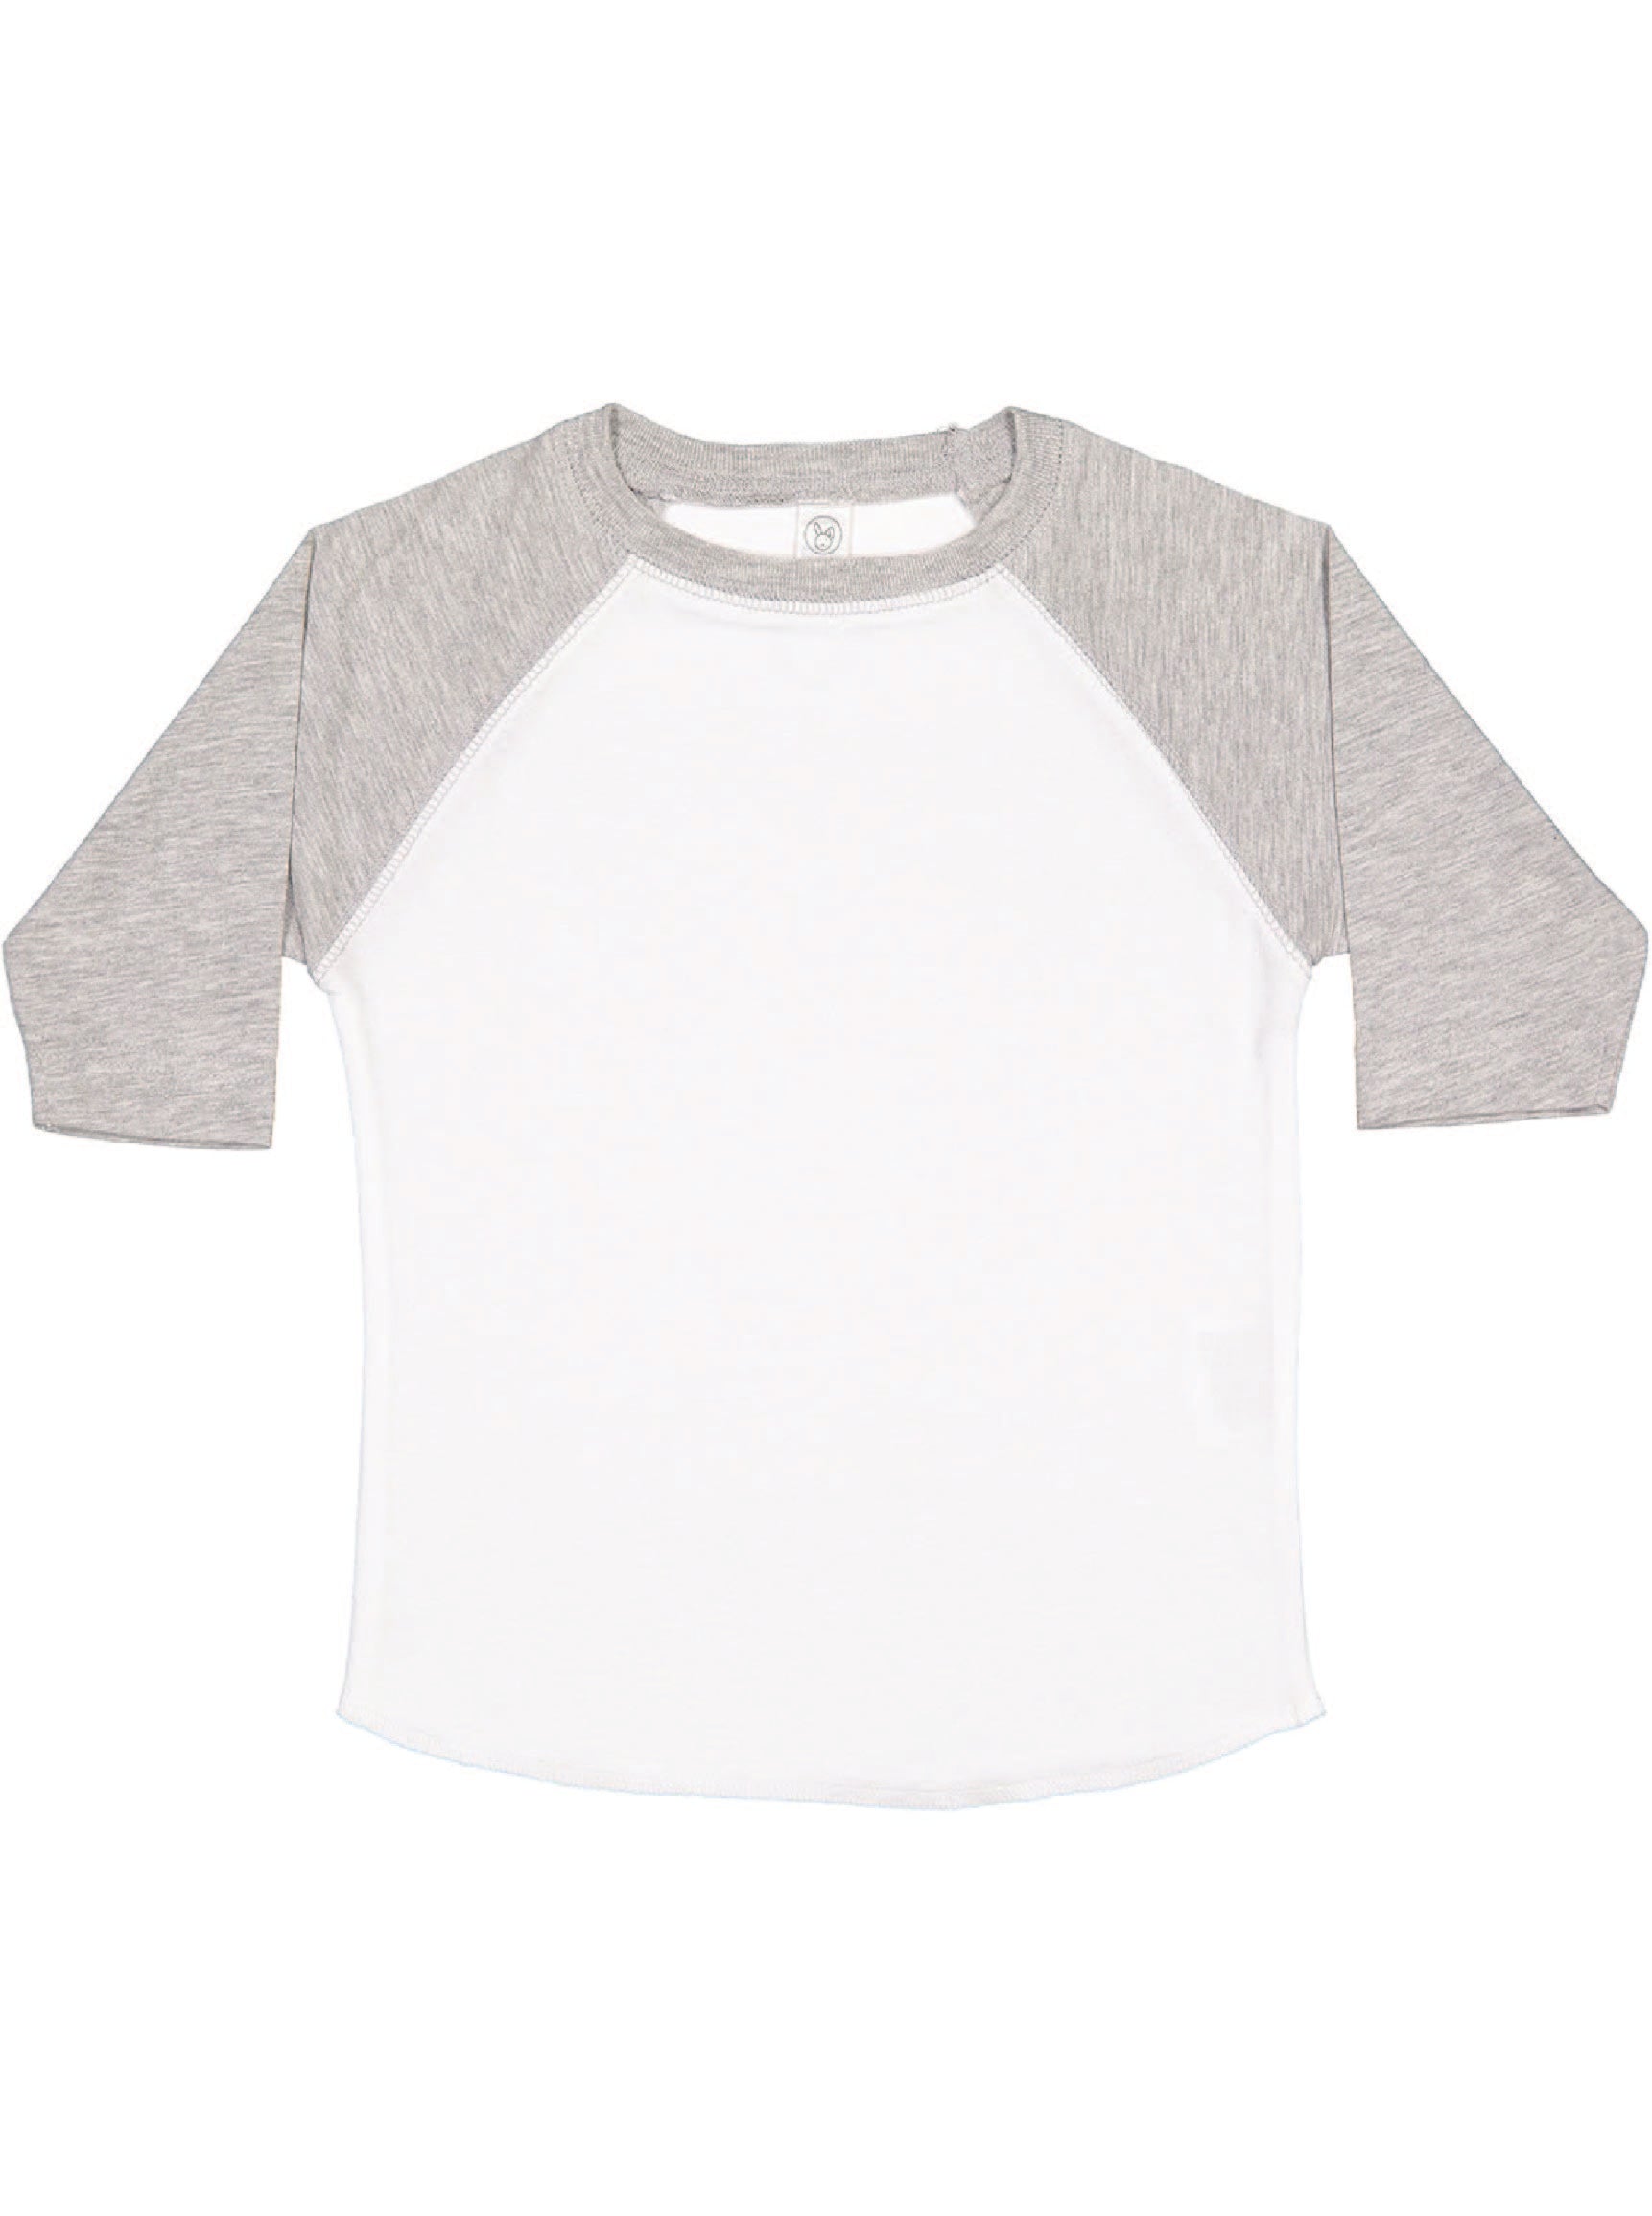 Toddler (Unisex) Raglan Baseball T-Shirt  (White / Vintage Heather)